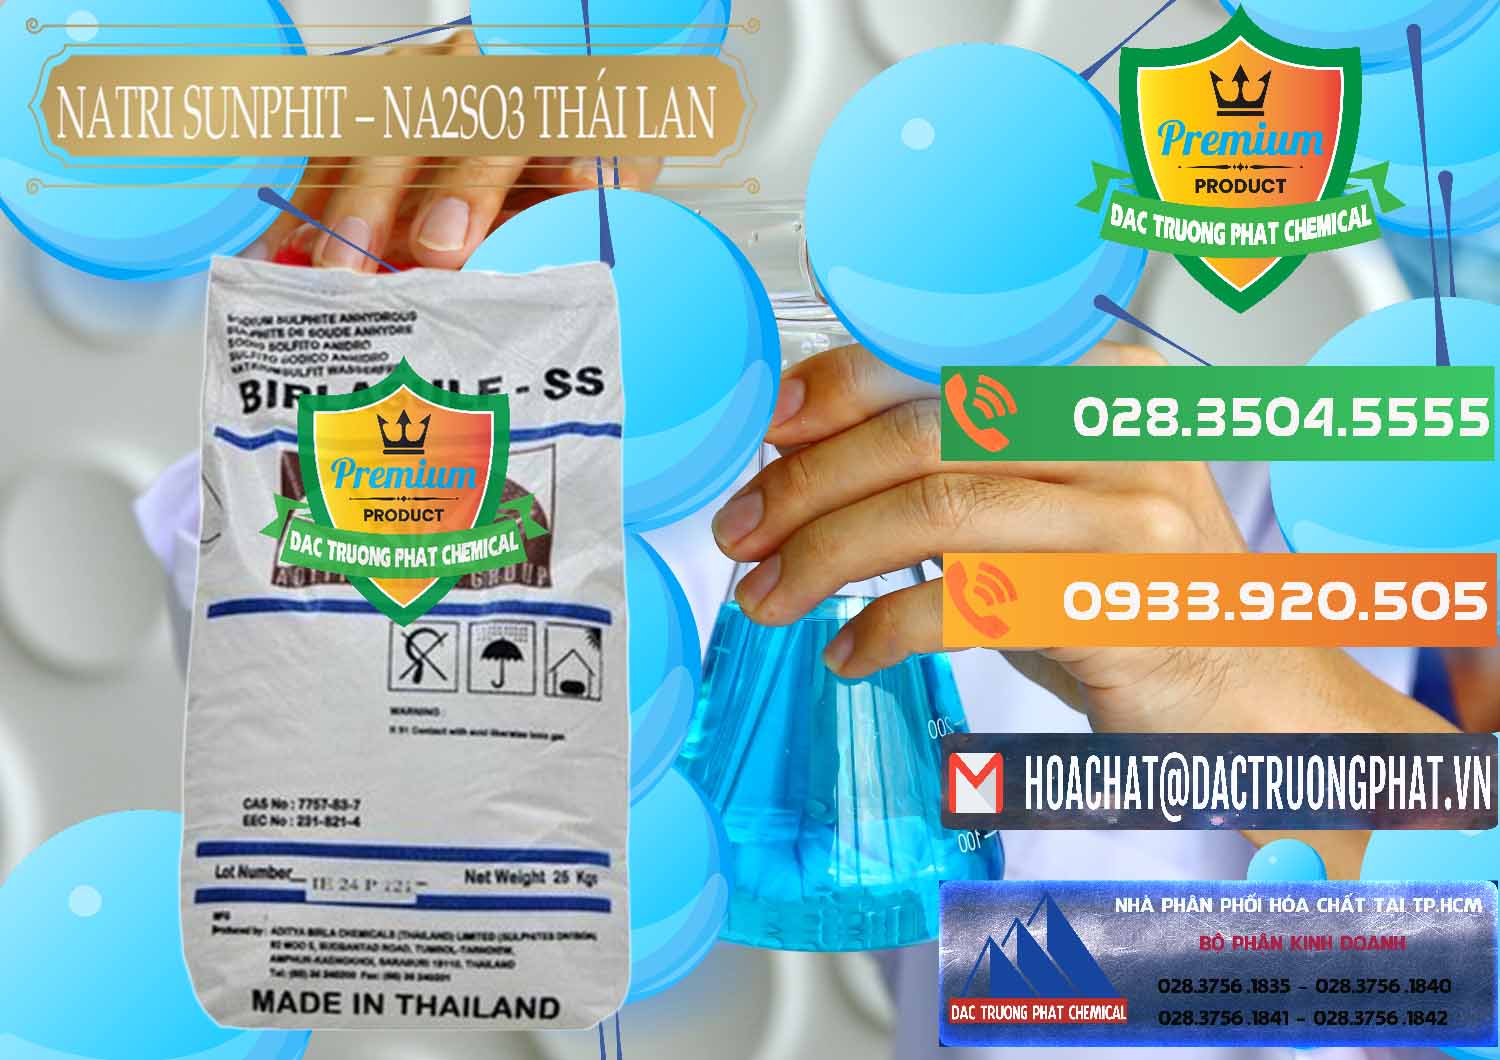 Cty chuyên bán - phân phối Natri Sunphit - NA2SO3 Thái Lan - 0105 - Nơi chuyên kinh doanh - phân phối hóa chất tại TP.HCM - hoachatxulynuoc.com.vn